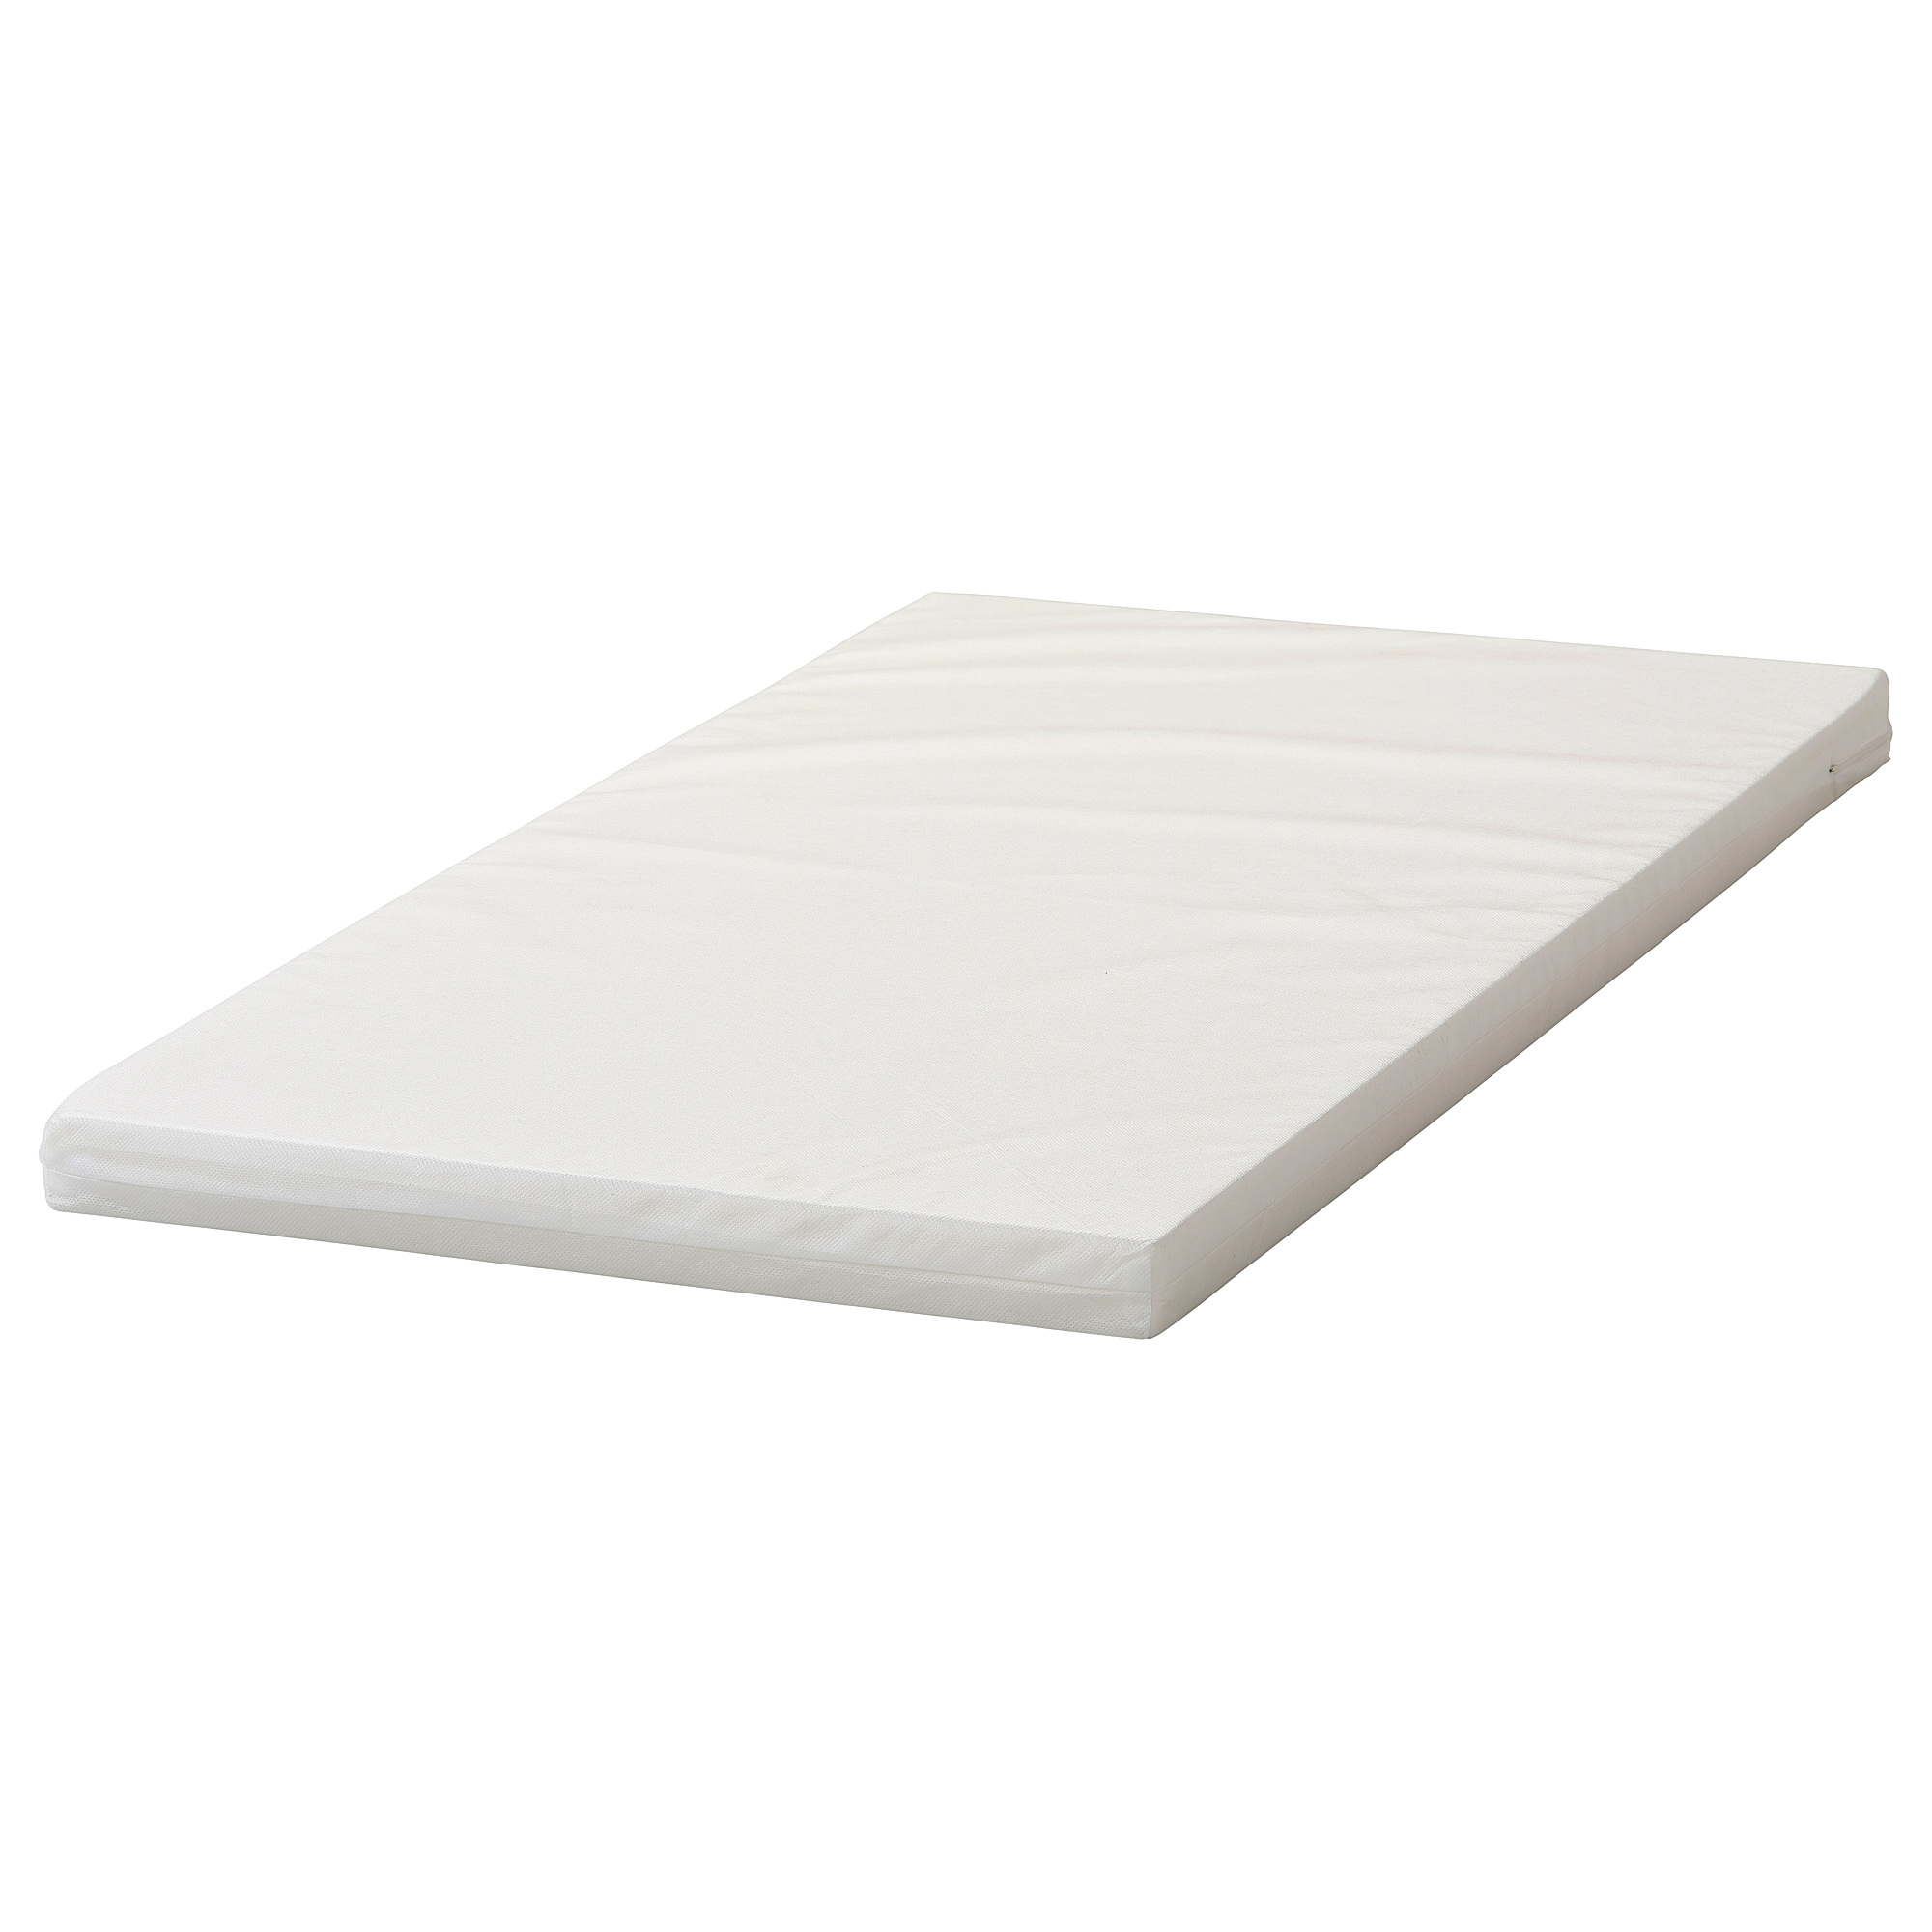 PLUTTIG foam mattress for cot